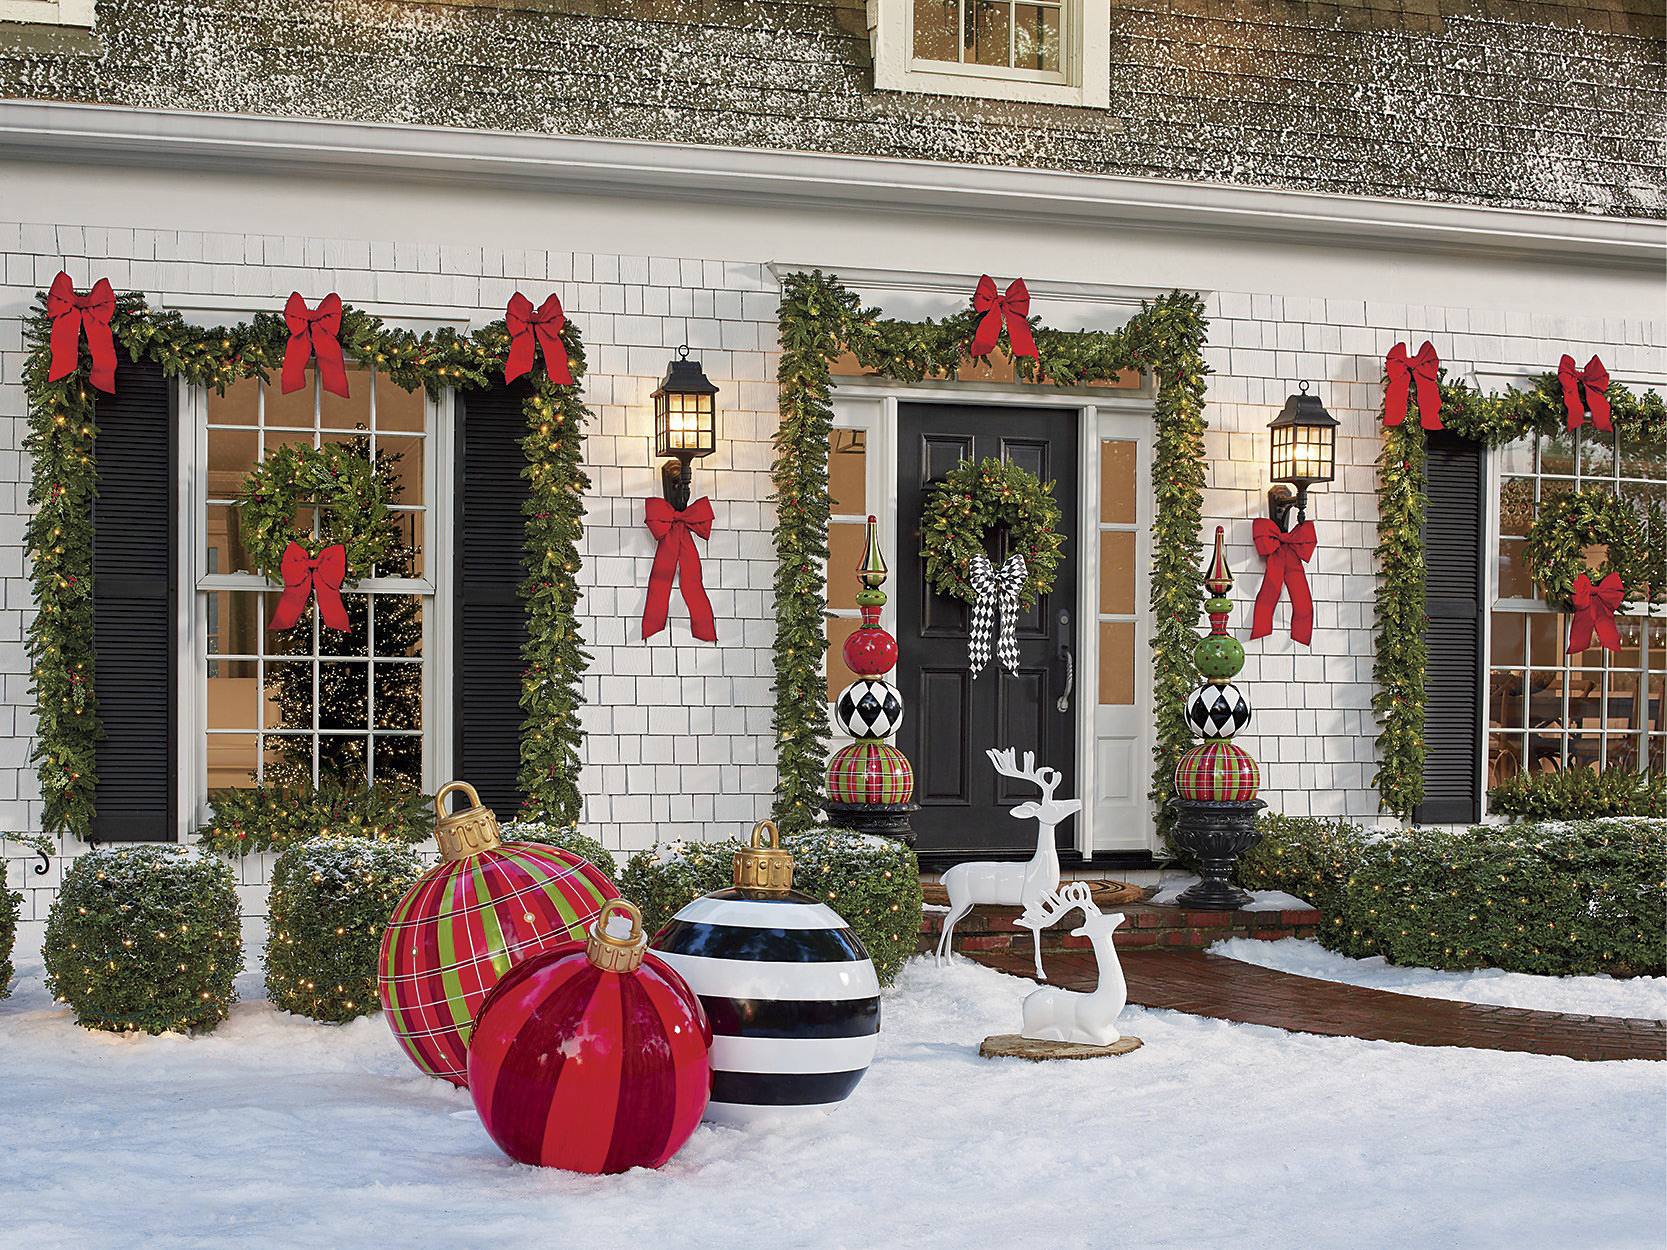 50 Best Christmas Door Decorations For 2021 - Homebnc